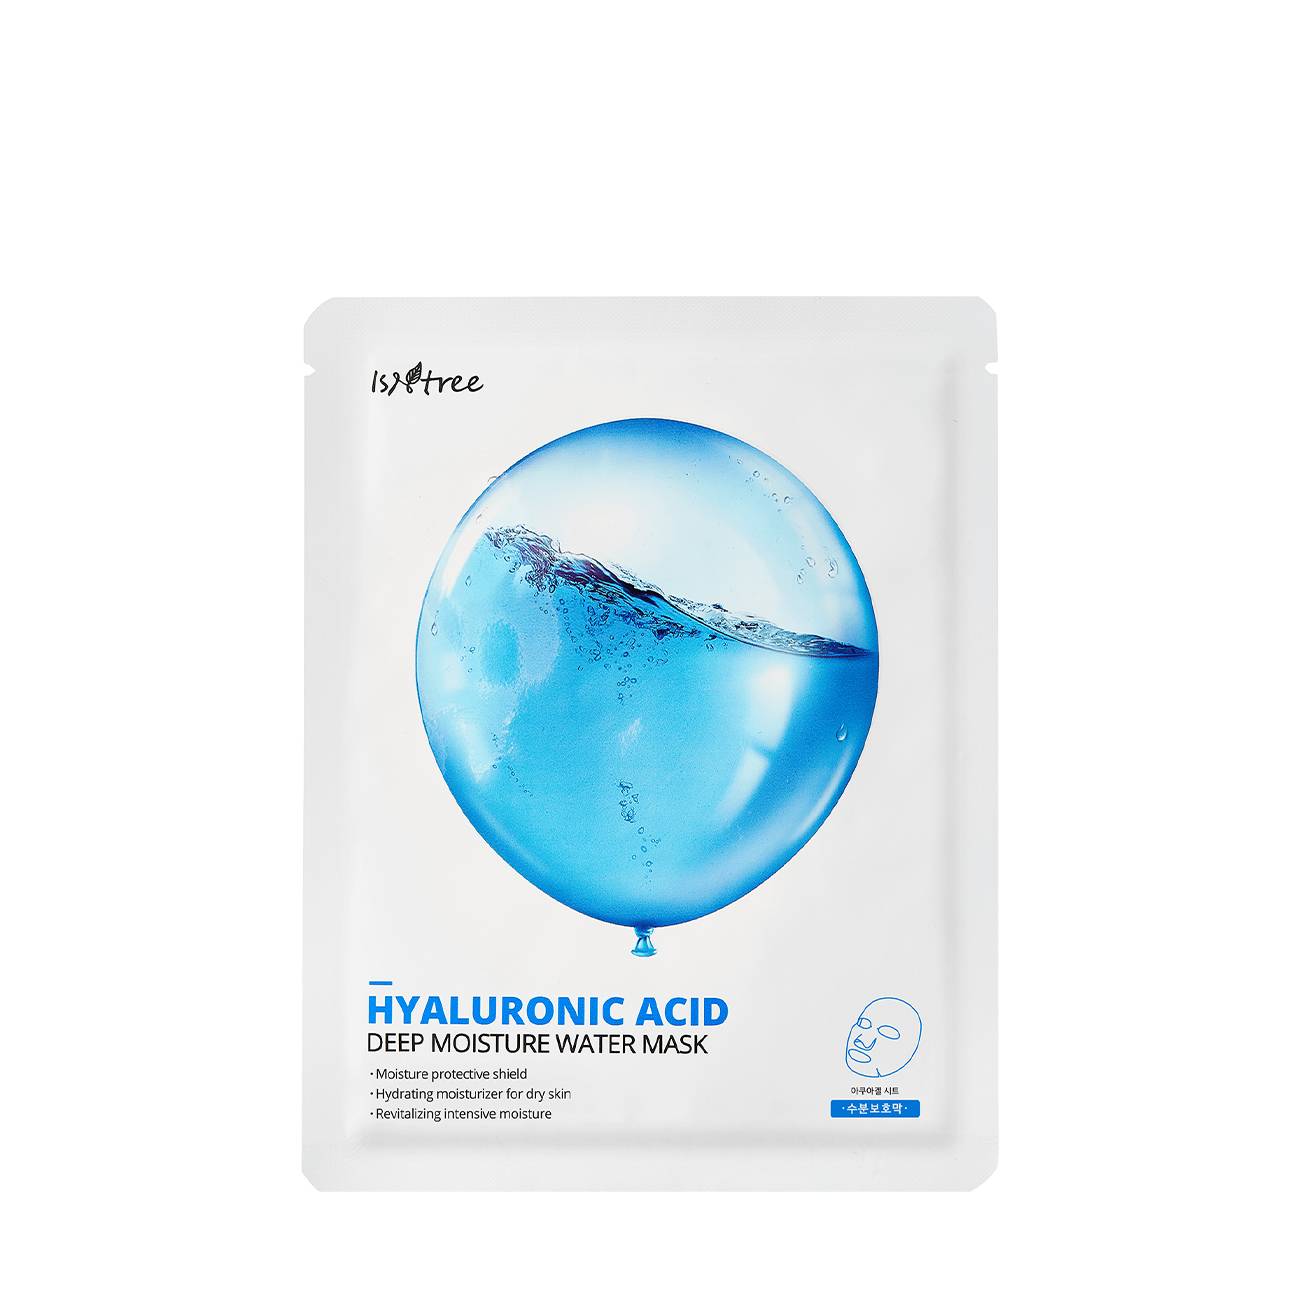 Hyaluronic Acid Deep Moisture Water Mask 25 gr bestvalue.eu